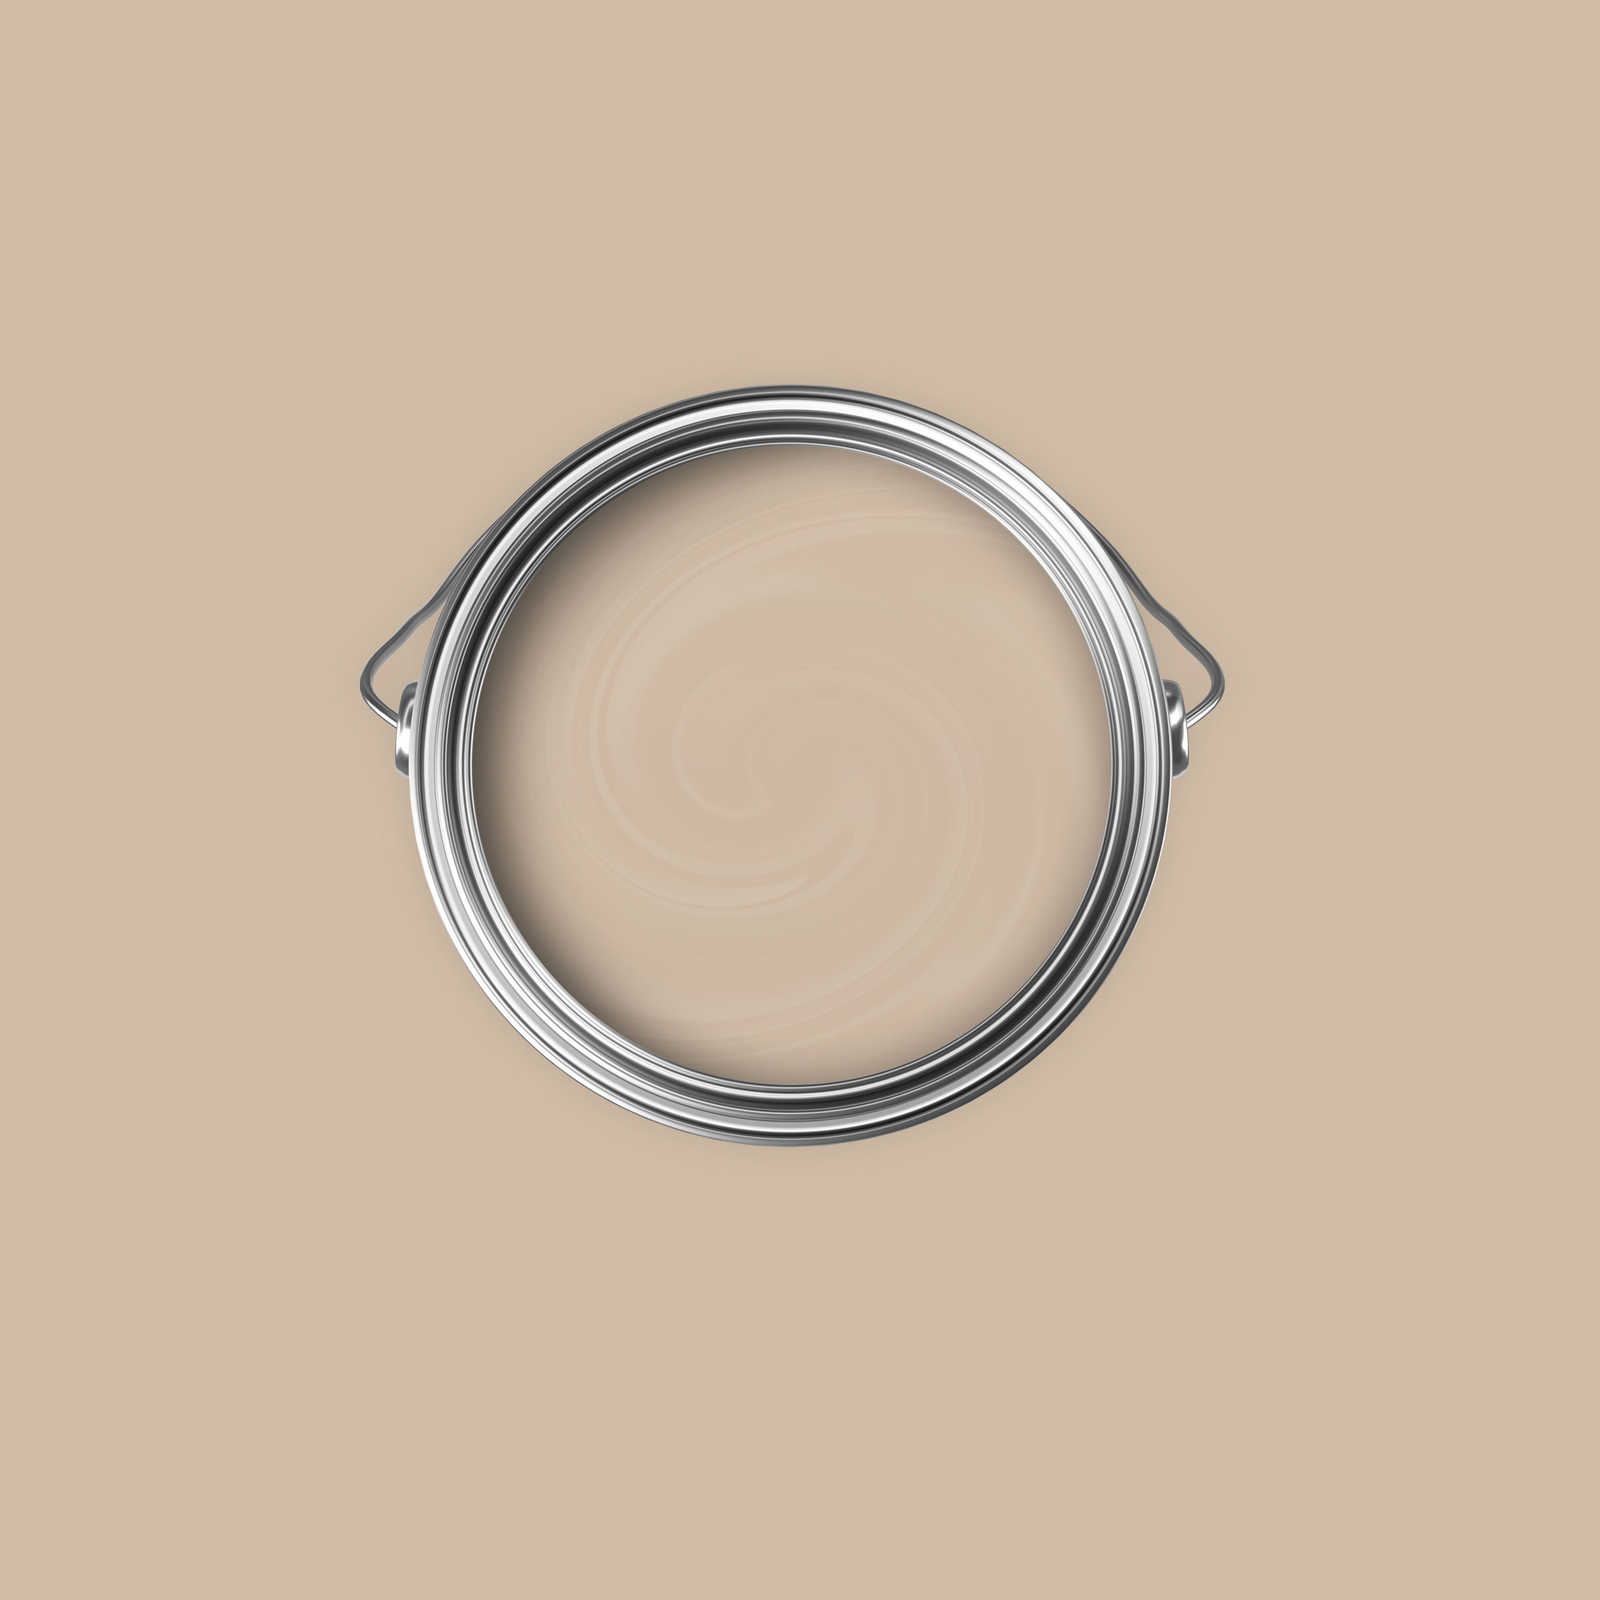             Premium Muurverf huiselijk licht beige »Modern Mud« NW716 – 2,5 liter
        